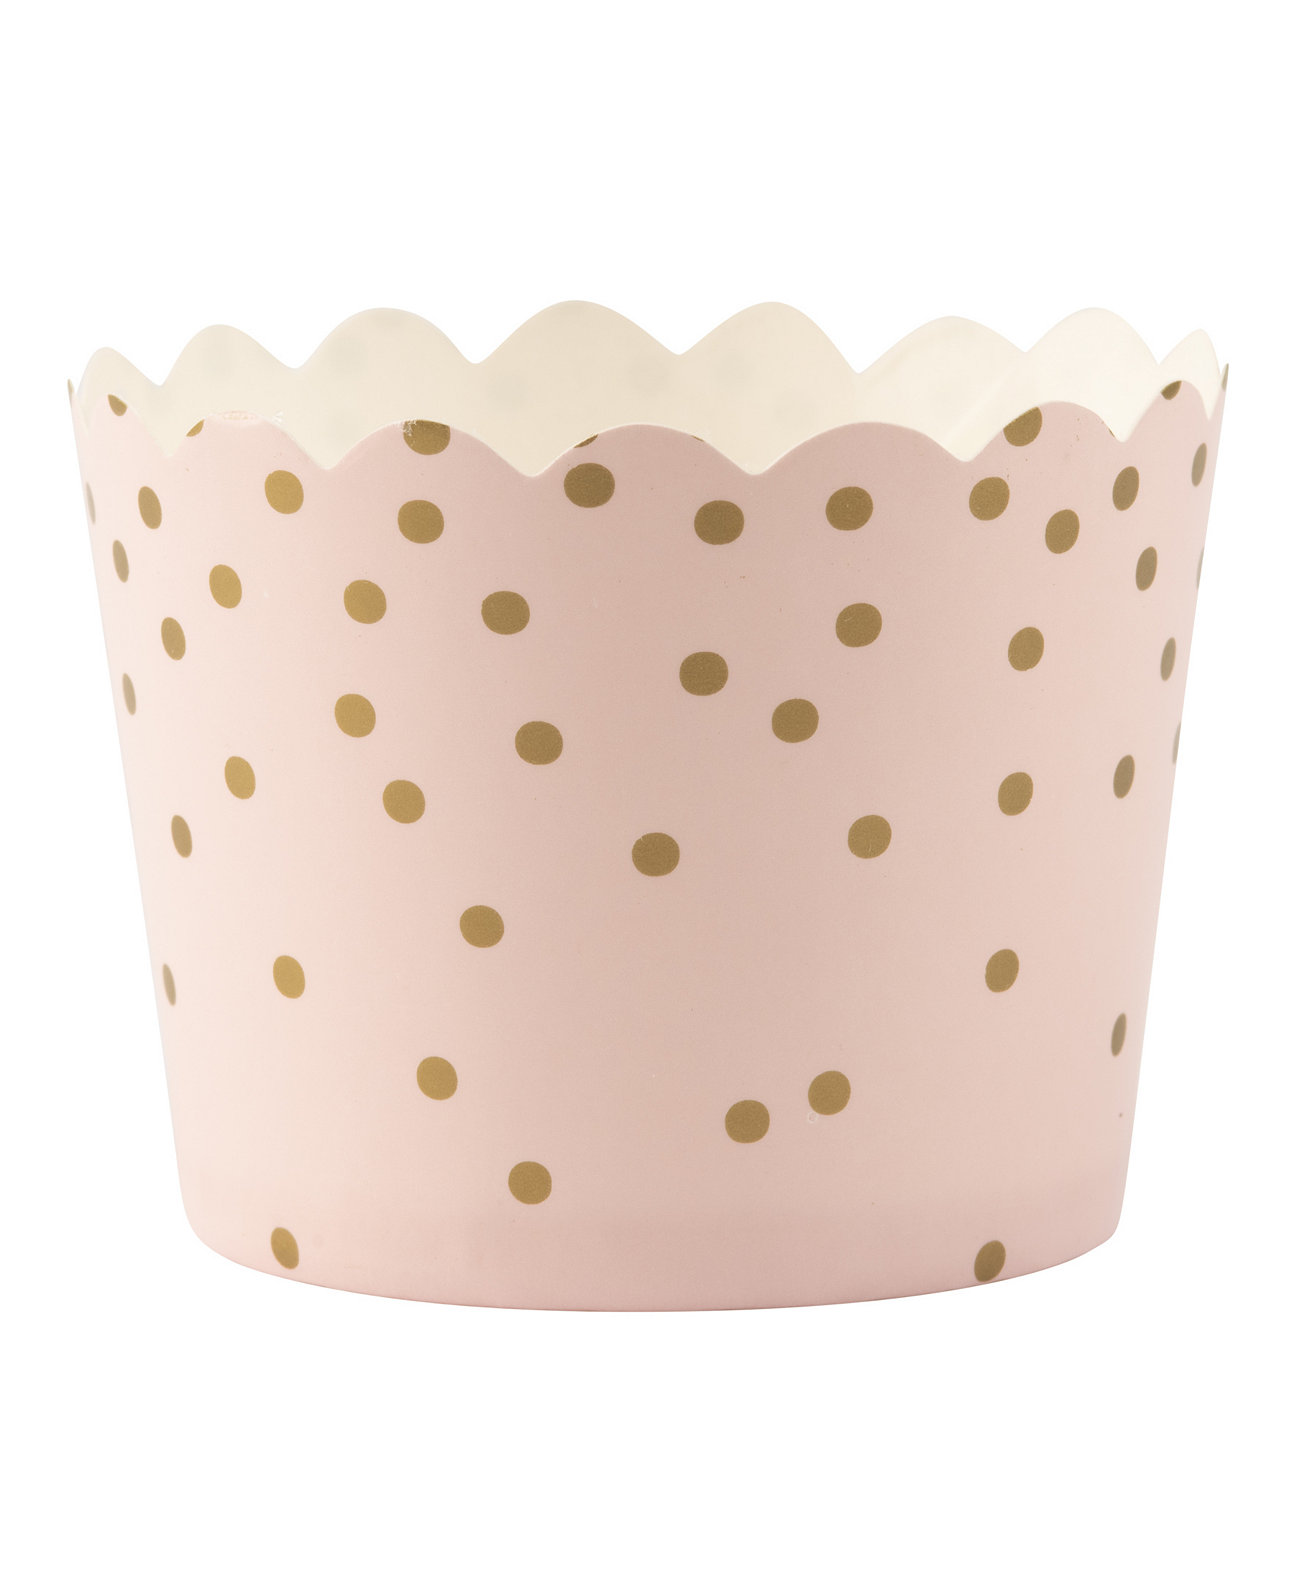 Маленькая чашка Dot Cup, 50 шт. В упаковке Simply Baked